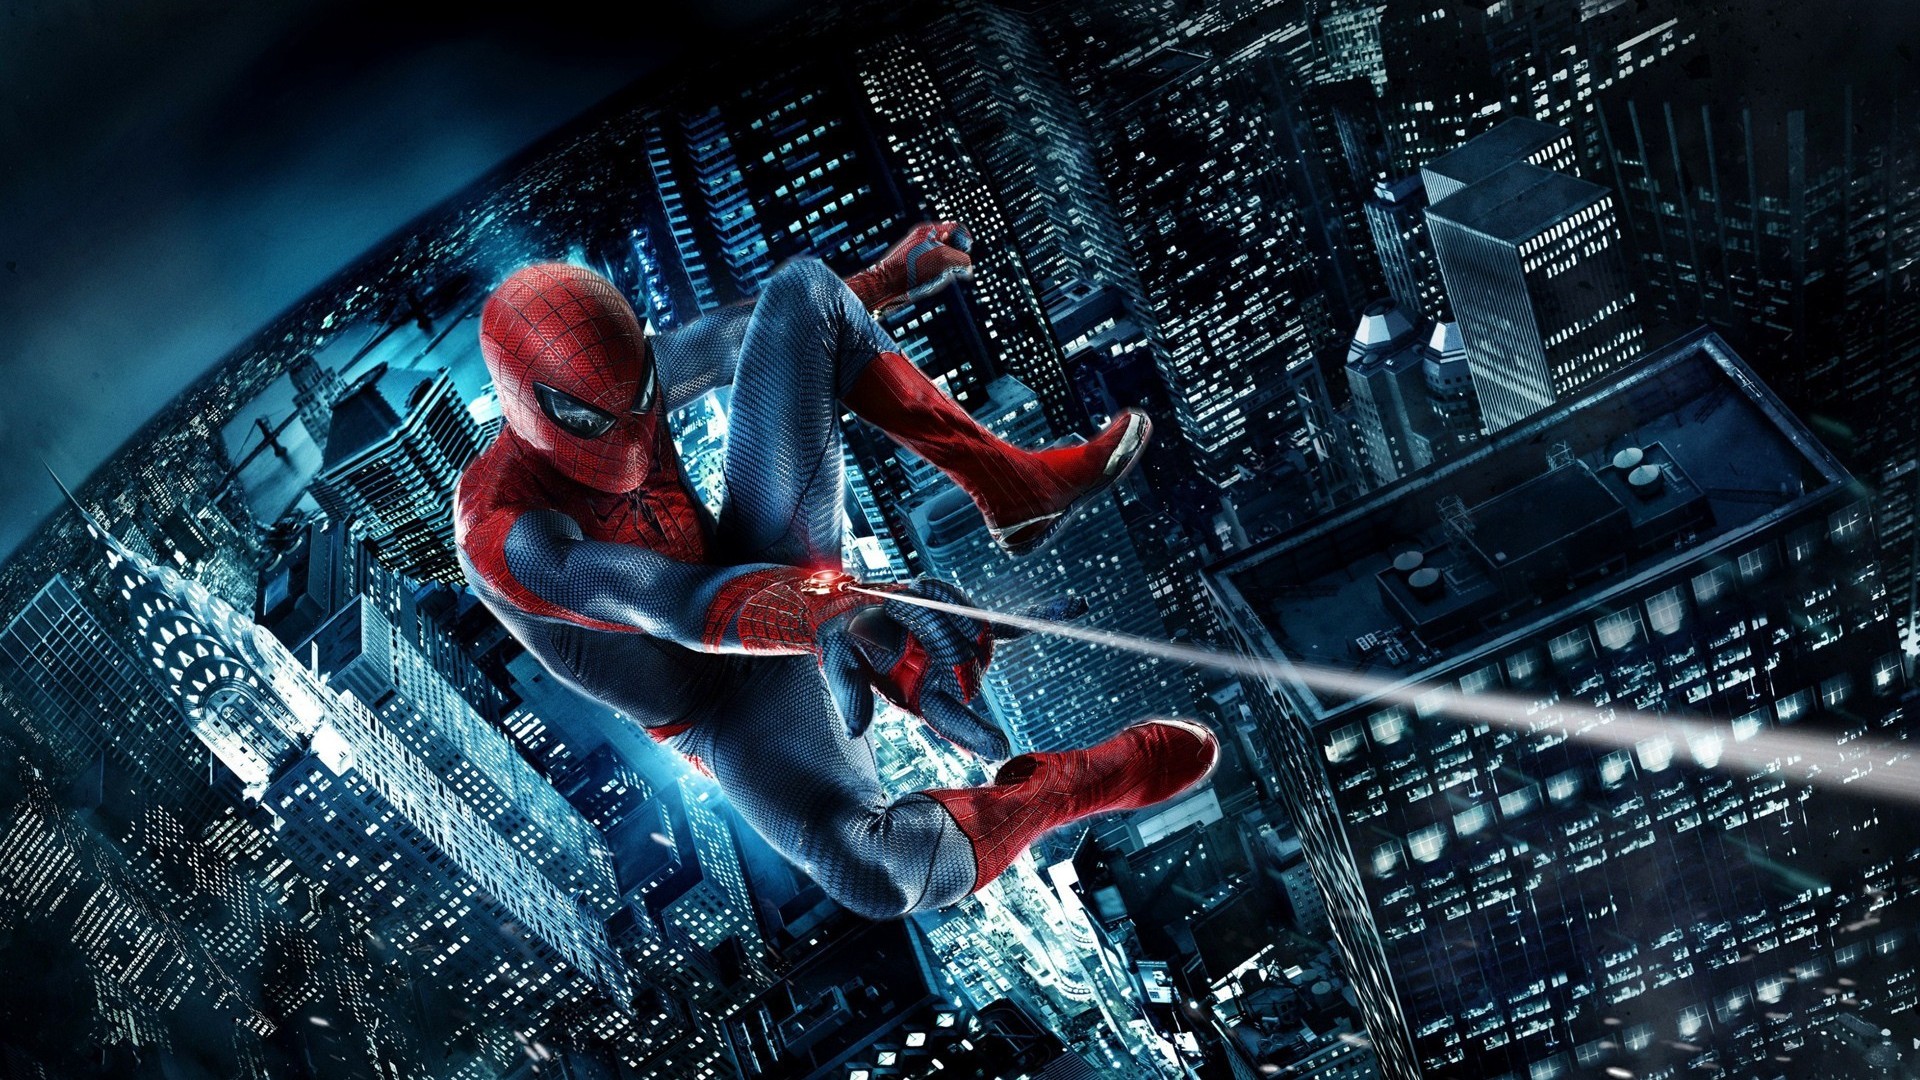 HD Superhero Spiderman Wallpaper for Desktop Full Size ...